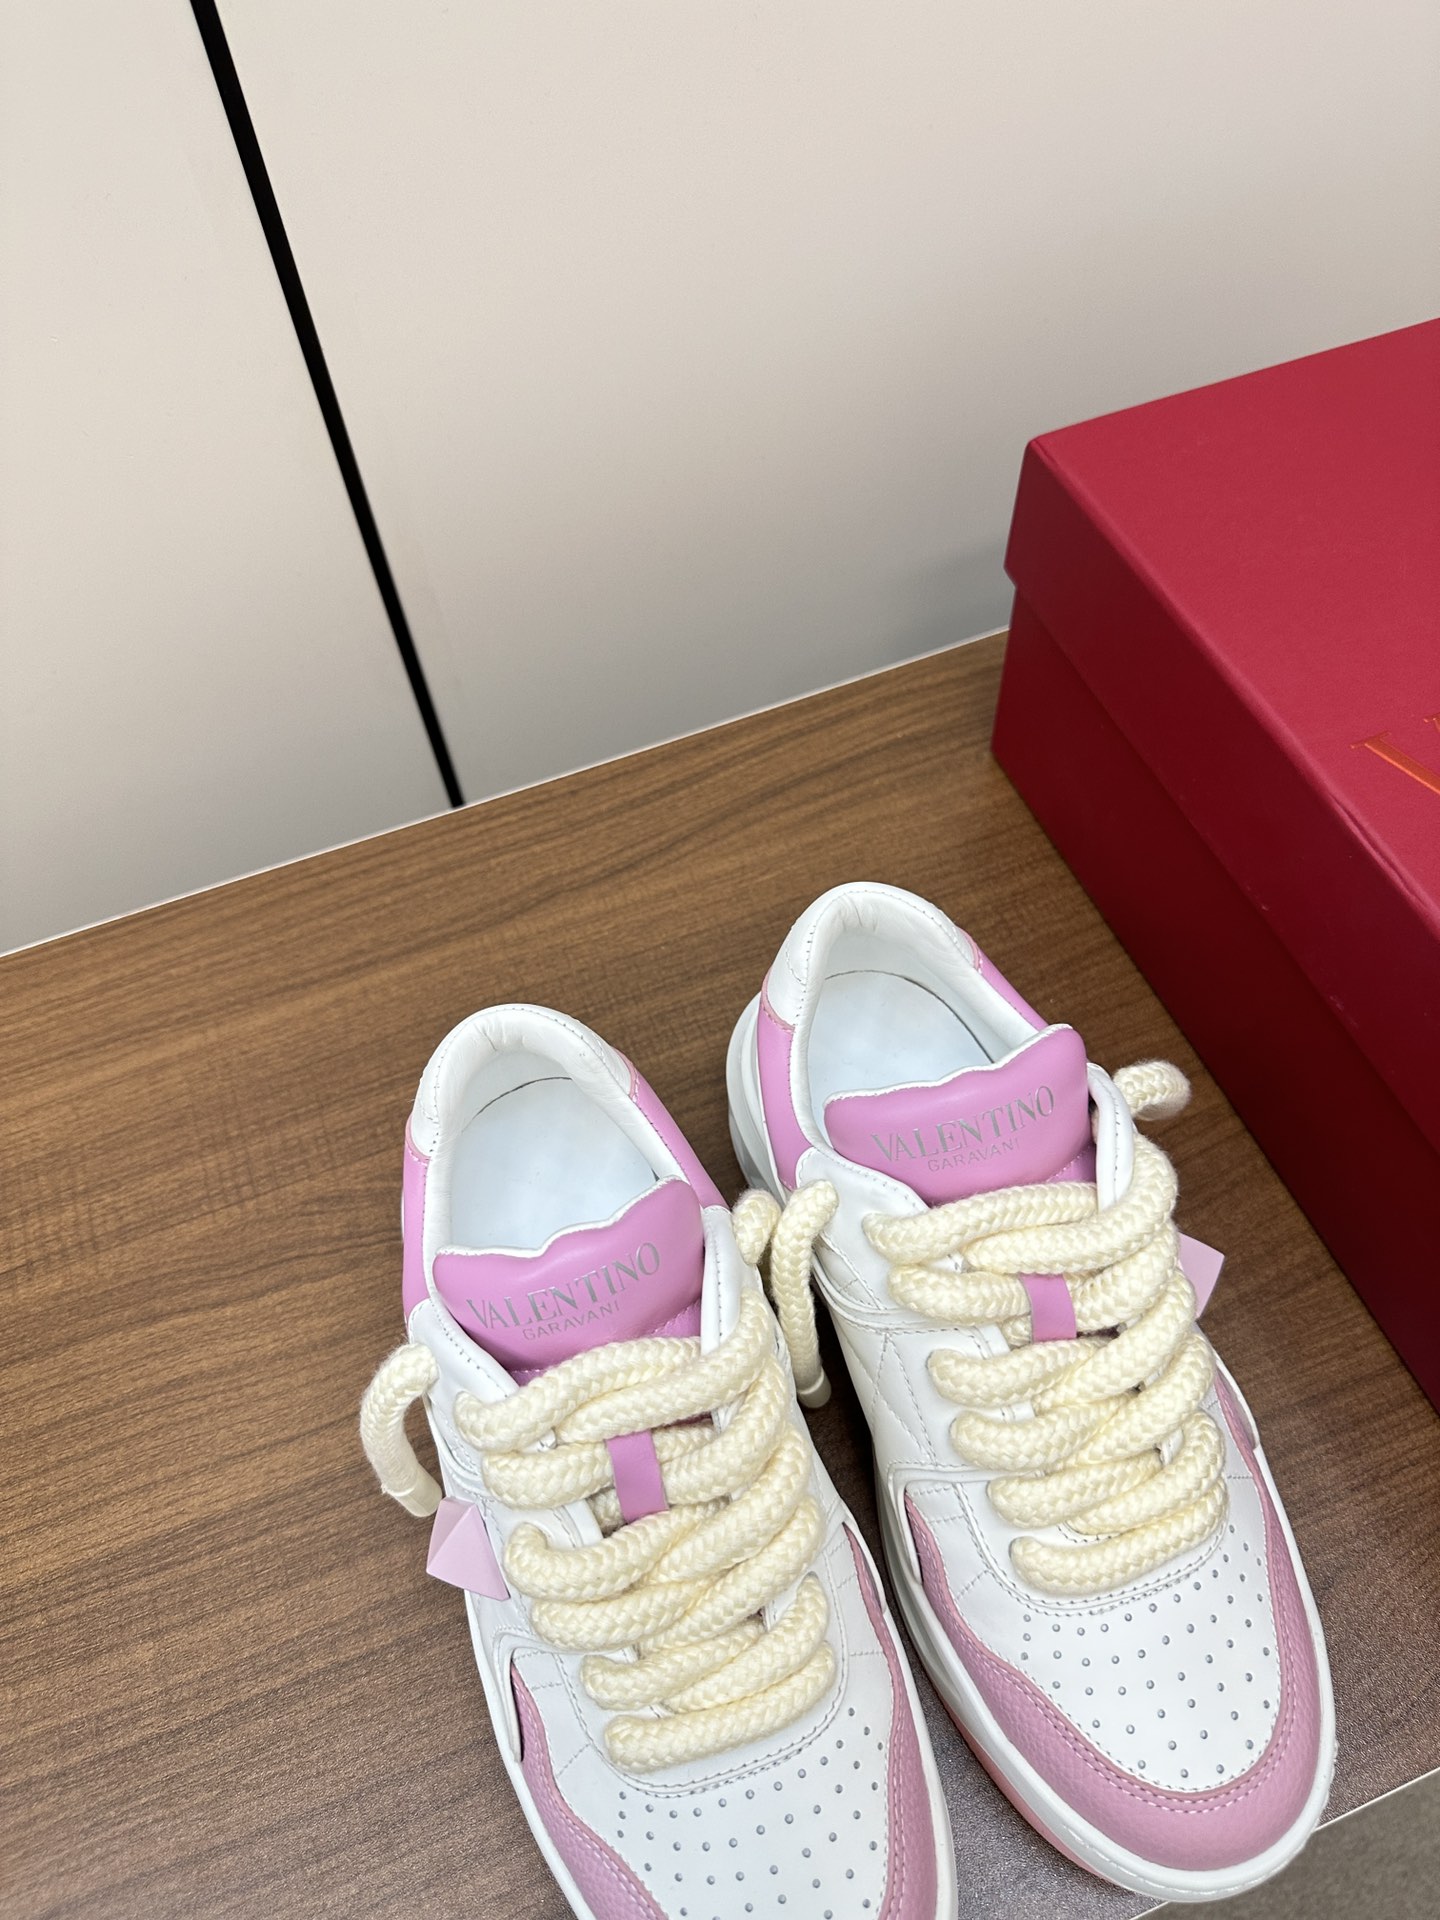 ヴァレンティノ靴レディース激安通販 カップシューズ‼  運動靴 軽量 通気性 厚底 ピンク_5